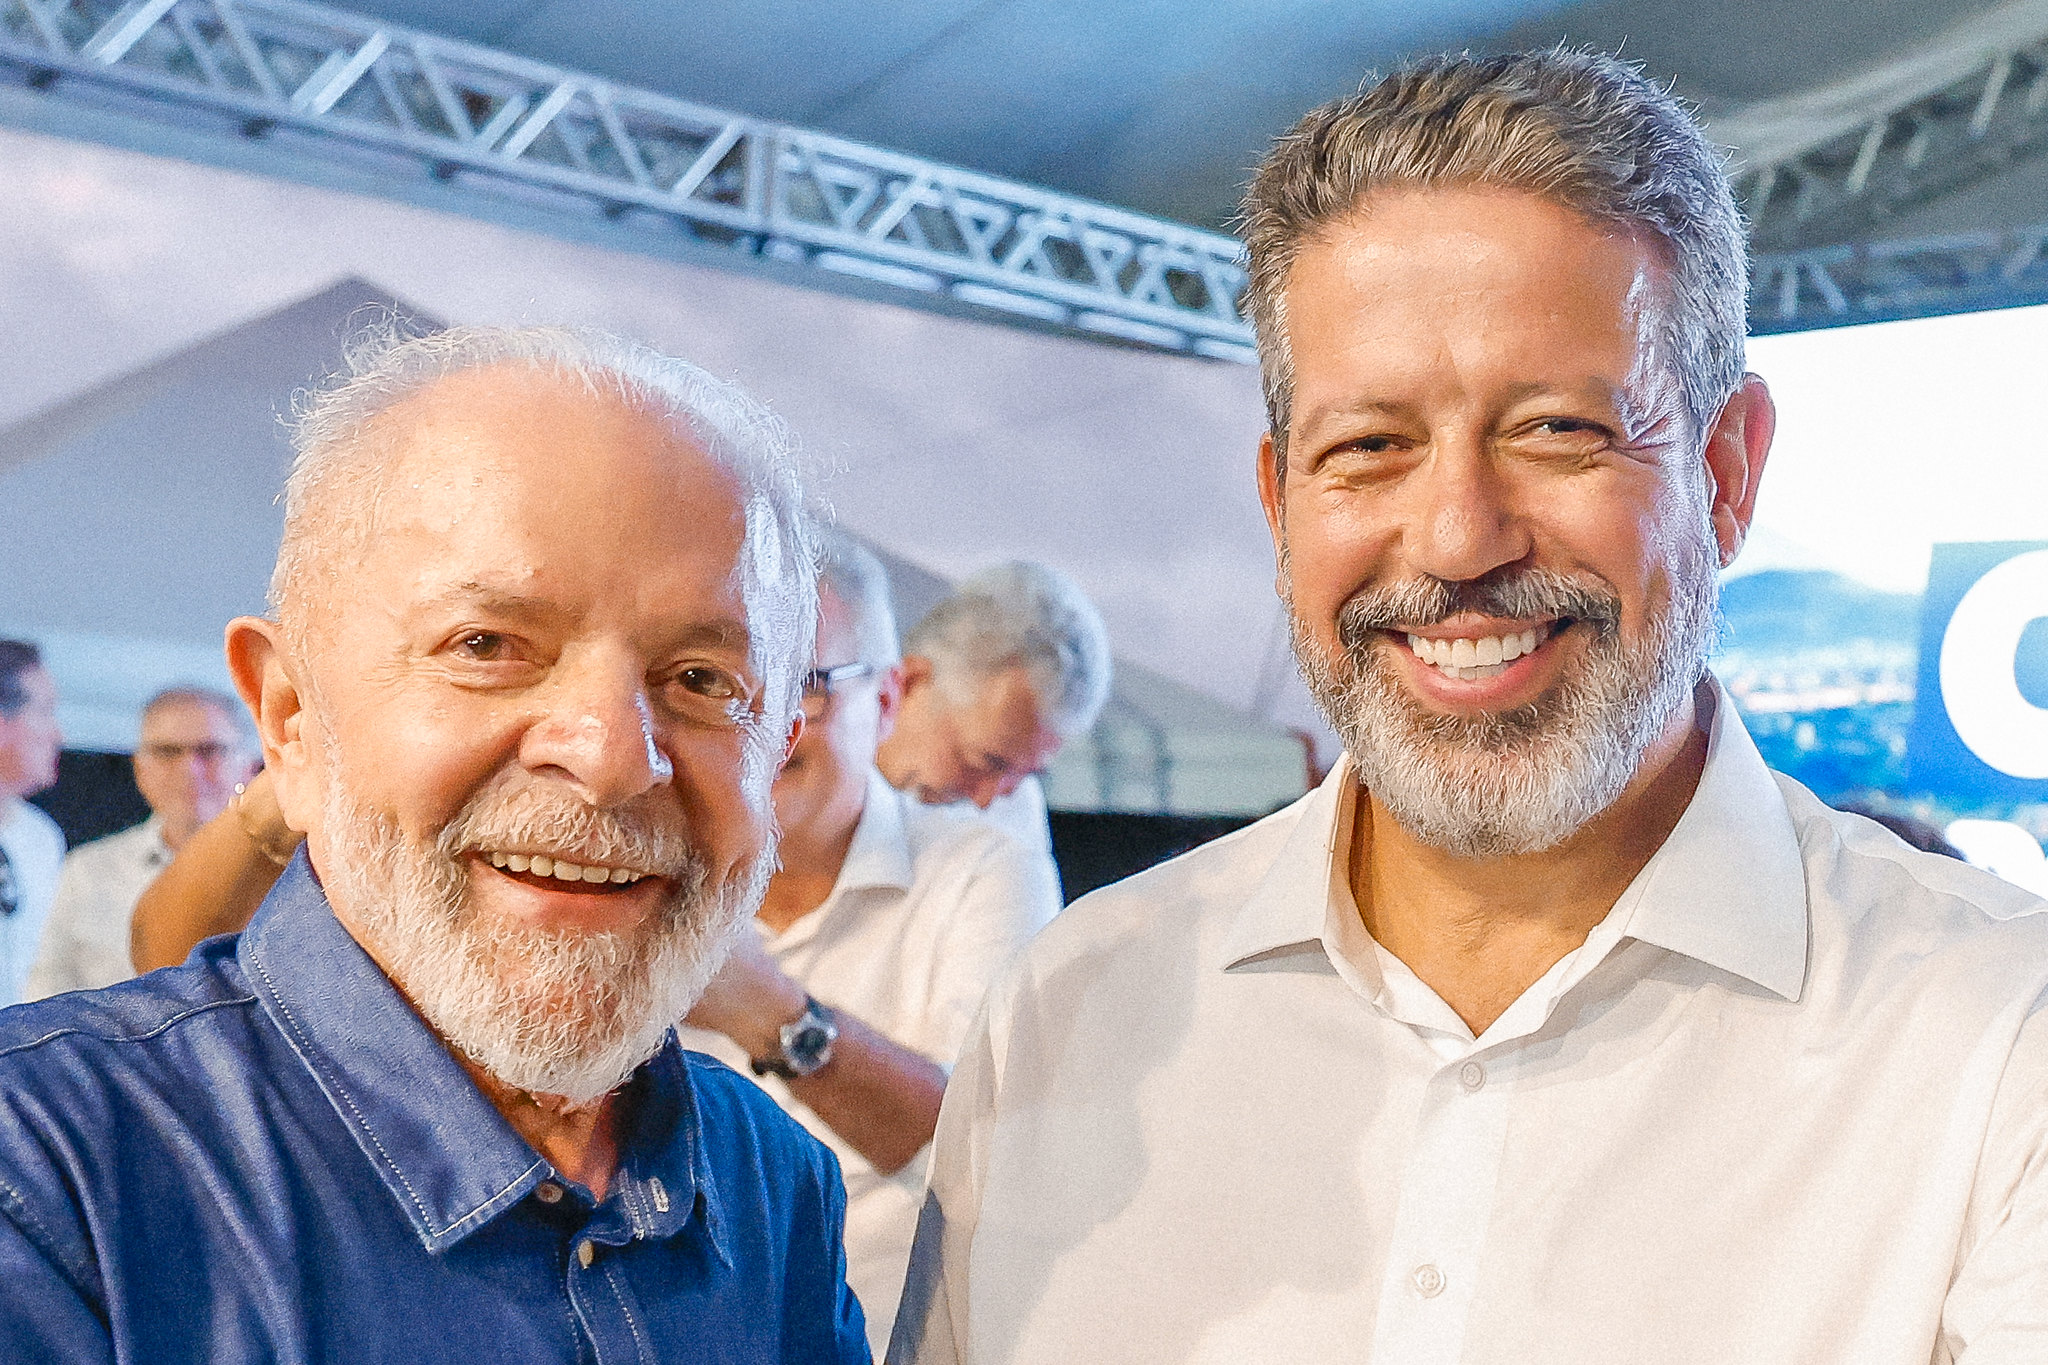 Luiz Inácio Lula da Silva (PT), presidente da República, e Arthur Lira (PP-AL), presidente da Câmara dos Deputados (Foto: Ricardo Stuckert/PR)